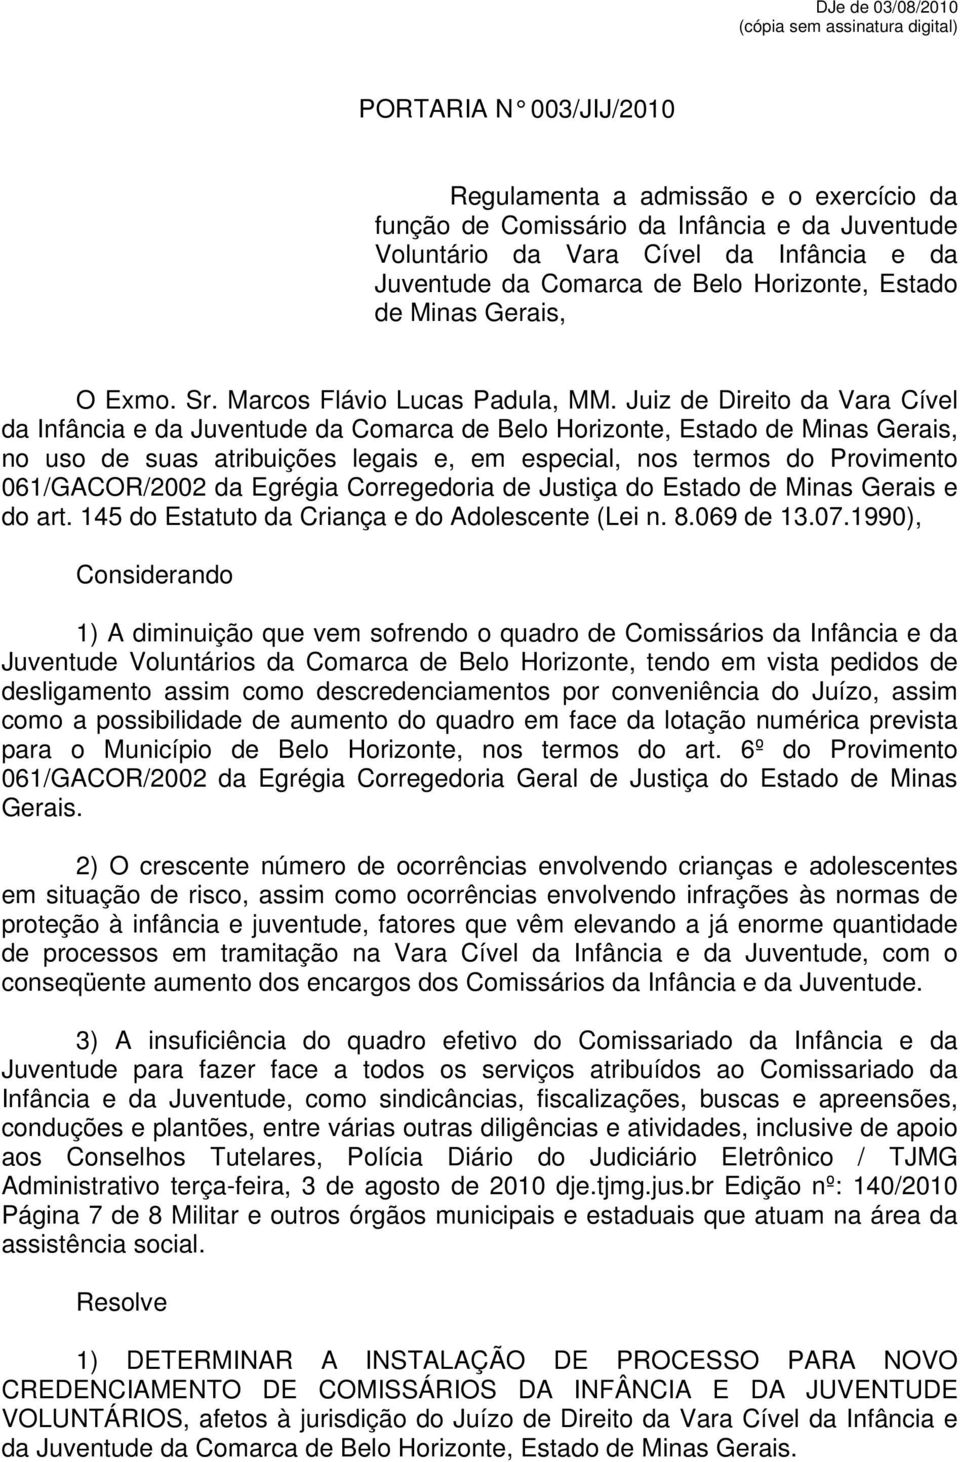 Juiz de Direito da Vara Cível da Infância e da Juventude da Comarca de Belo Horizonte, Estado de Minas Gerais, no uso de suas atribuições legais e, em especial, nos termos do Provimento